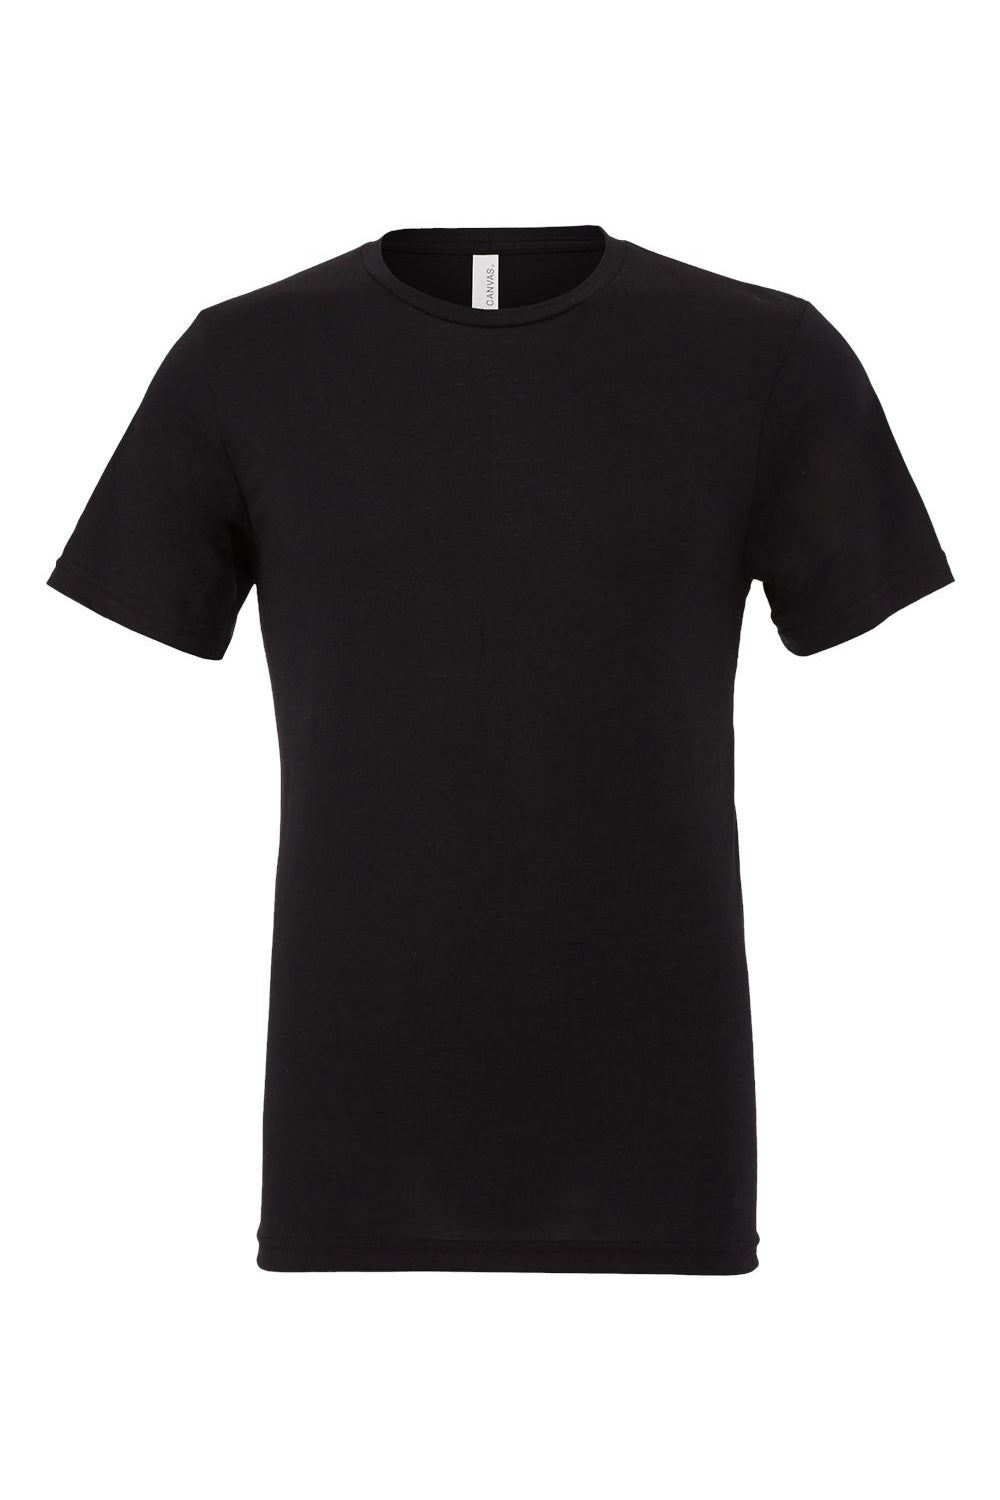 Bella + Canvas BC3413/3413C/3413 Mens Short Sleeve Crewneck T-Shirt Solid Black Flat Front